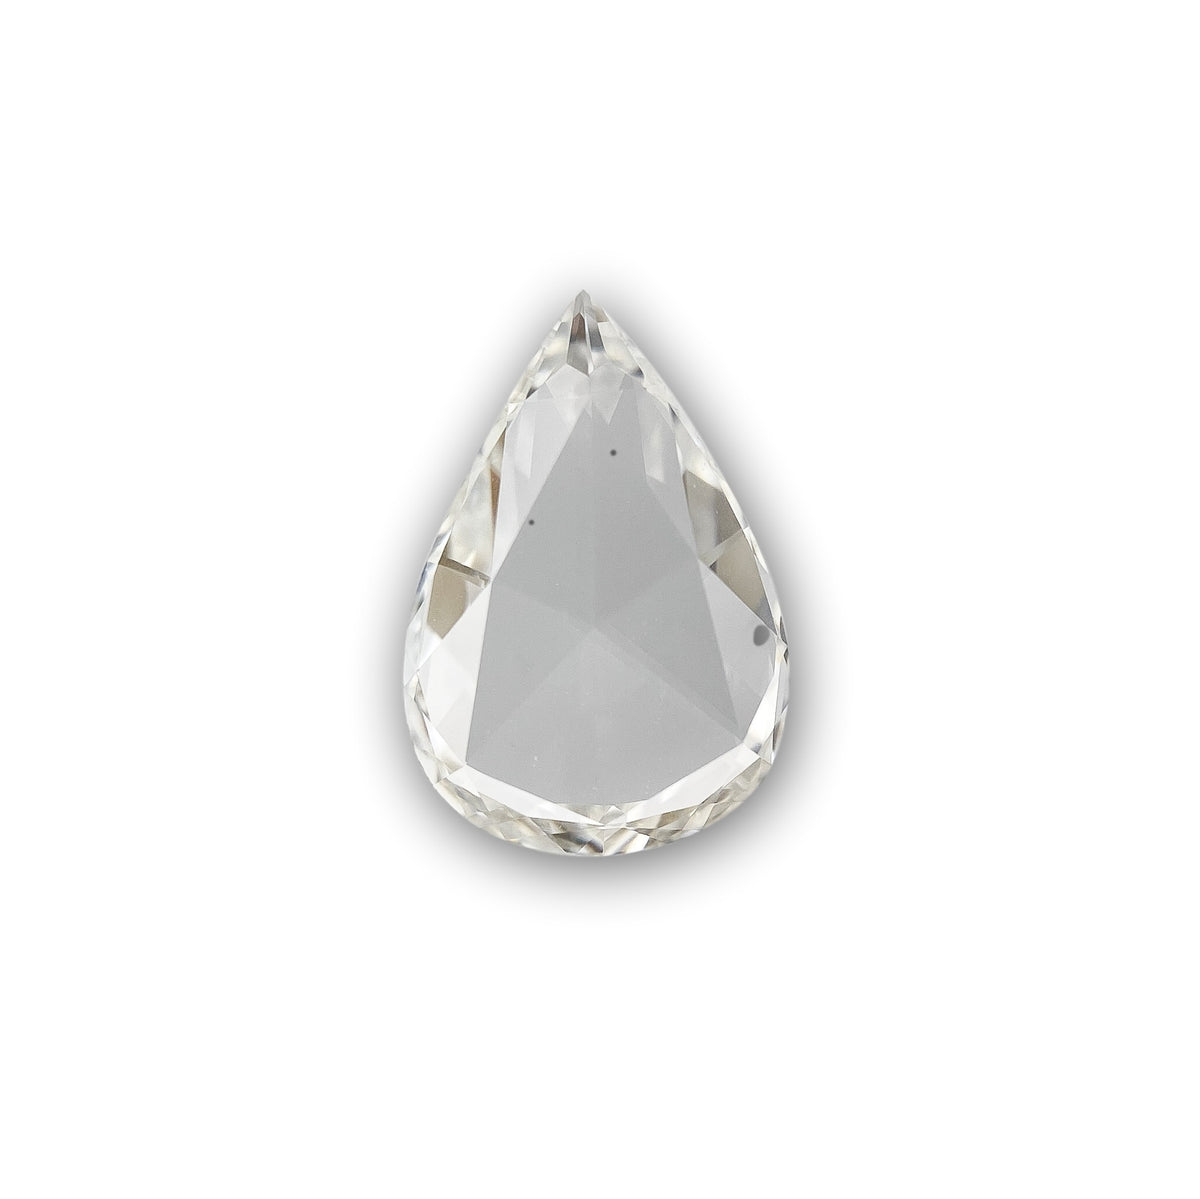 1.11ct | I/VVS2 Pear Shape Rose Cut Diamond (GIA) - Modern Rustic Diamond